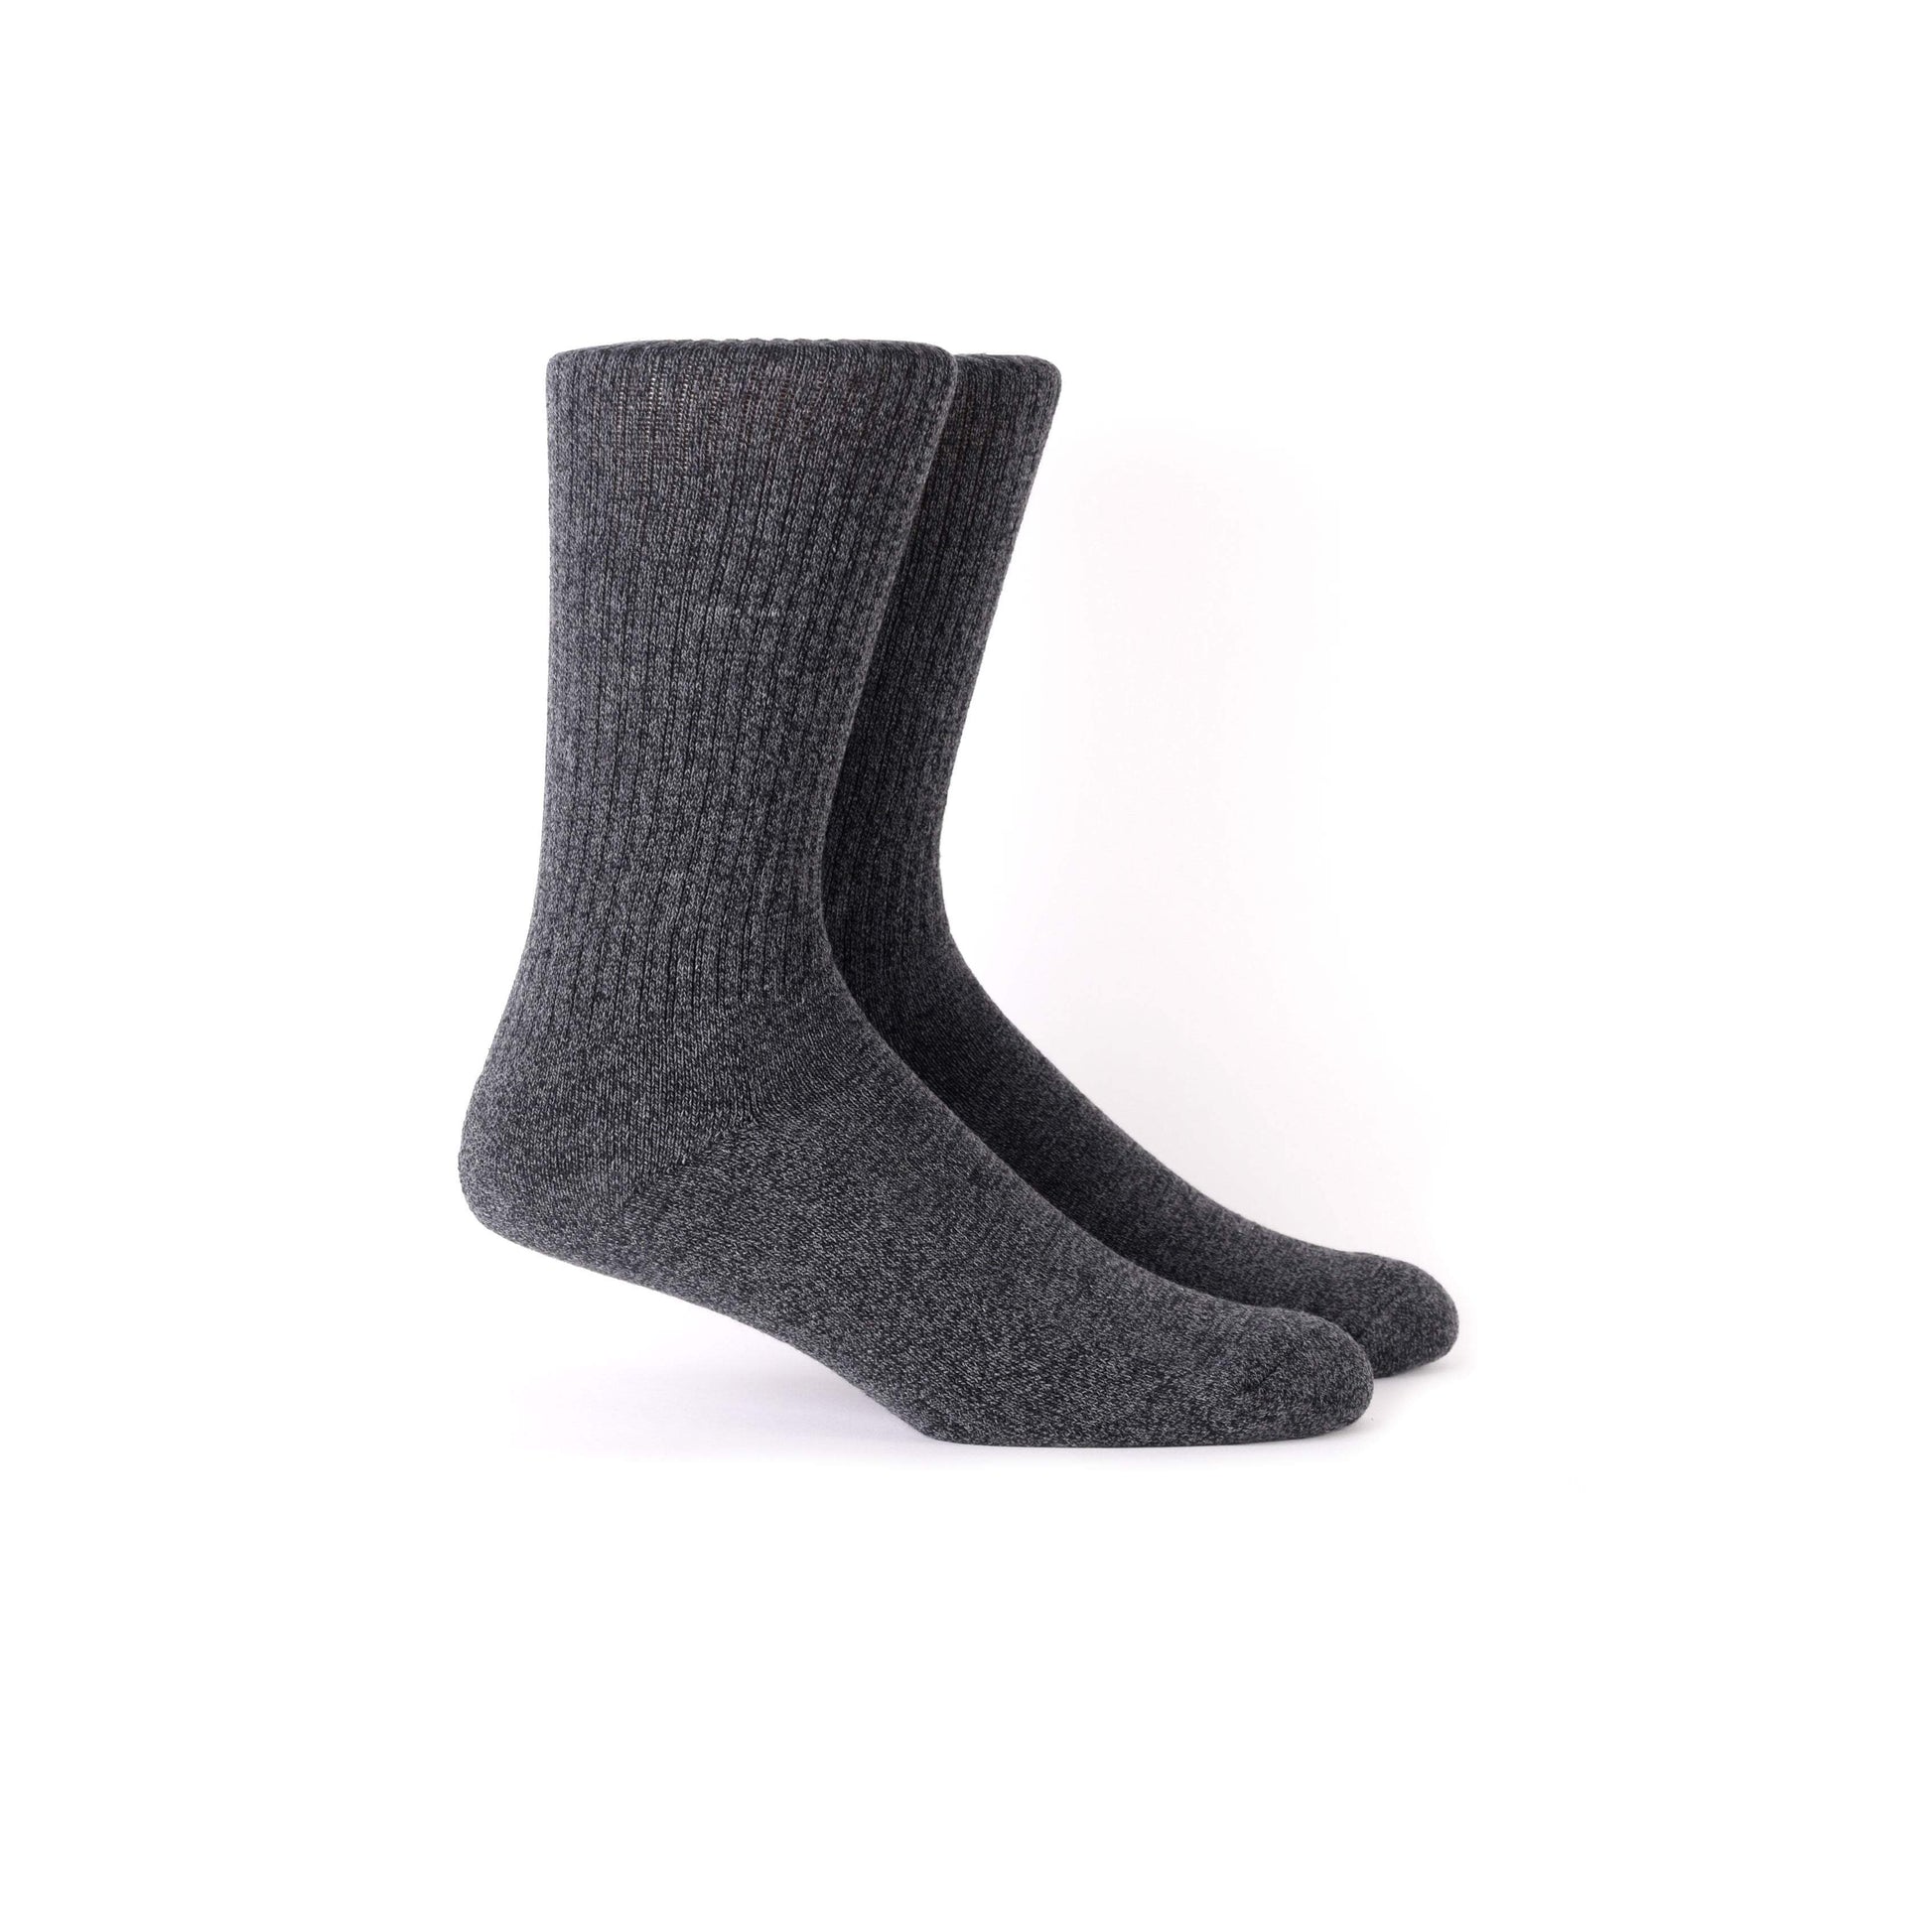 HELM Socks HELM Marled Socks - Charcoal